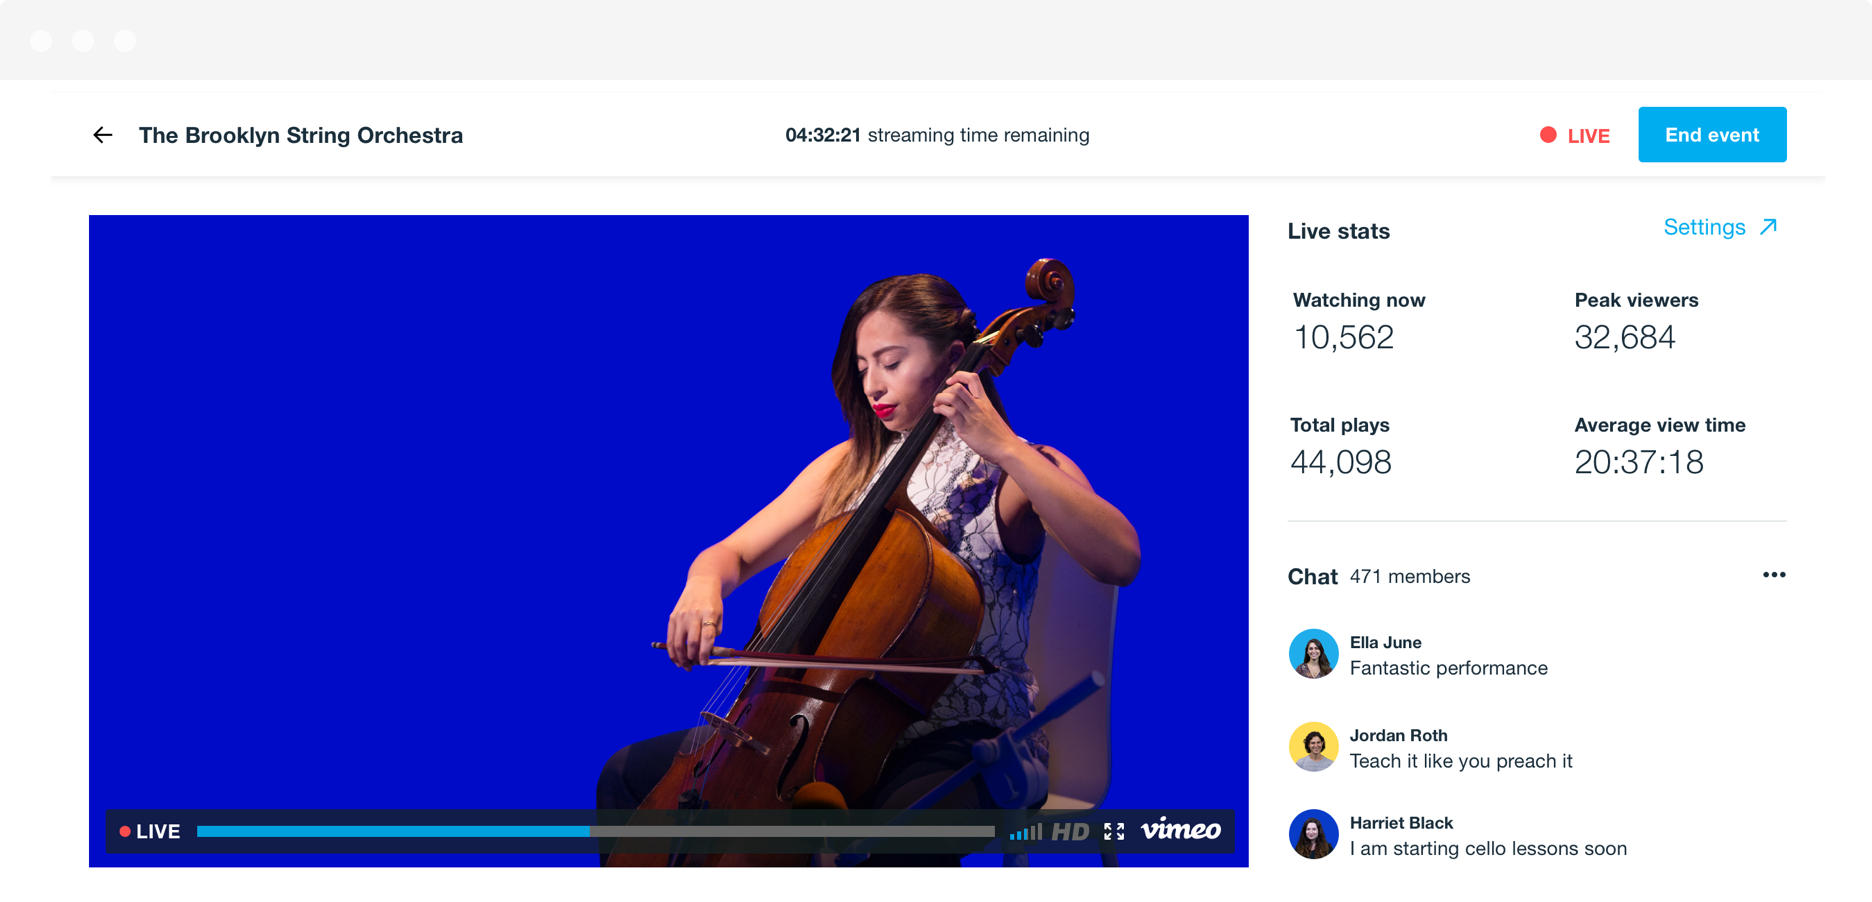 Eine statische Aufnahme aus dem Live-Stream eines Cellisten, die den Videoplayer sowie die Live-Statistiken und den Publikumschat in Echtzeit auf der rechten Seite zeigt.